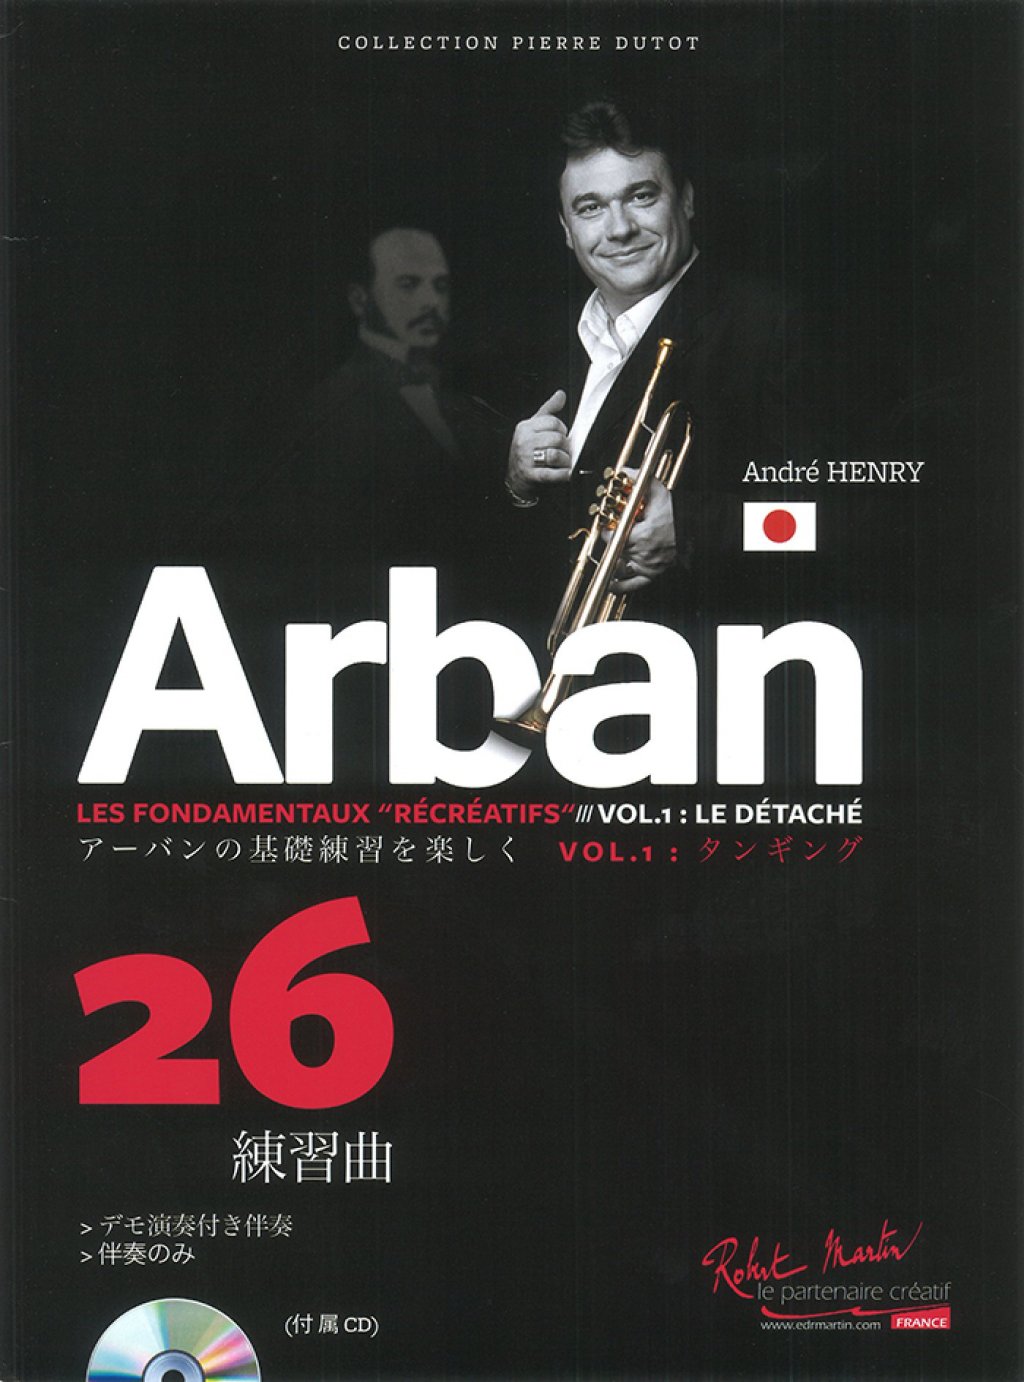 「Arban アーバンの基礎練習を楽しく　vol.1:タンギング　26練習曲」 画像 1